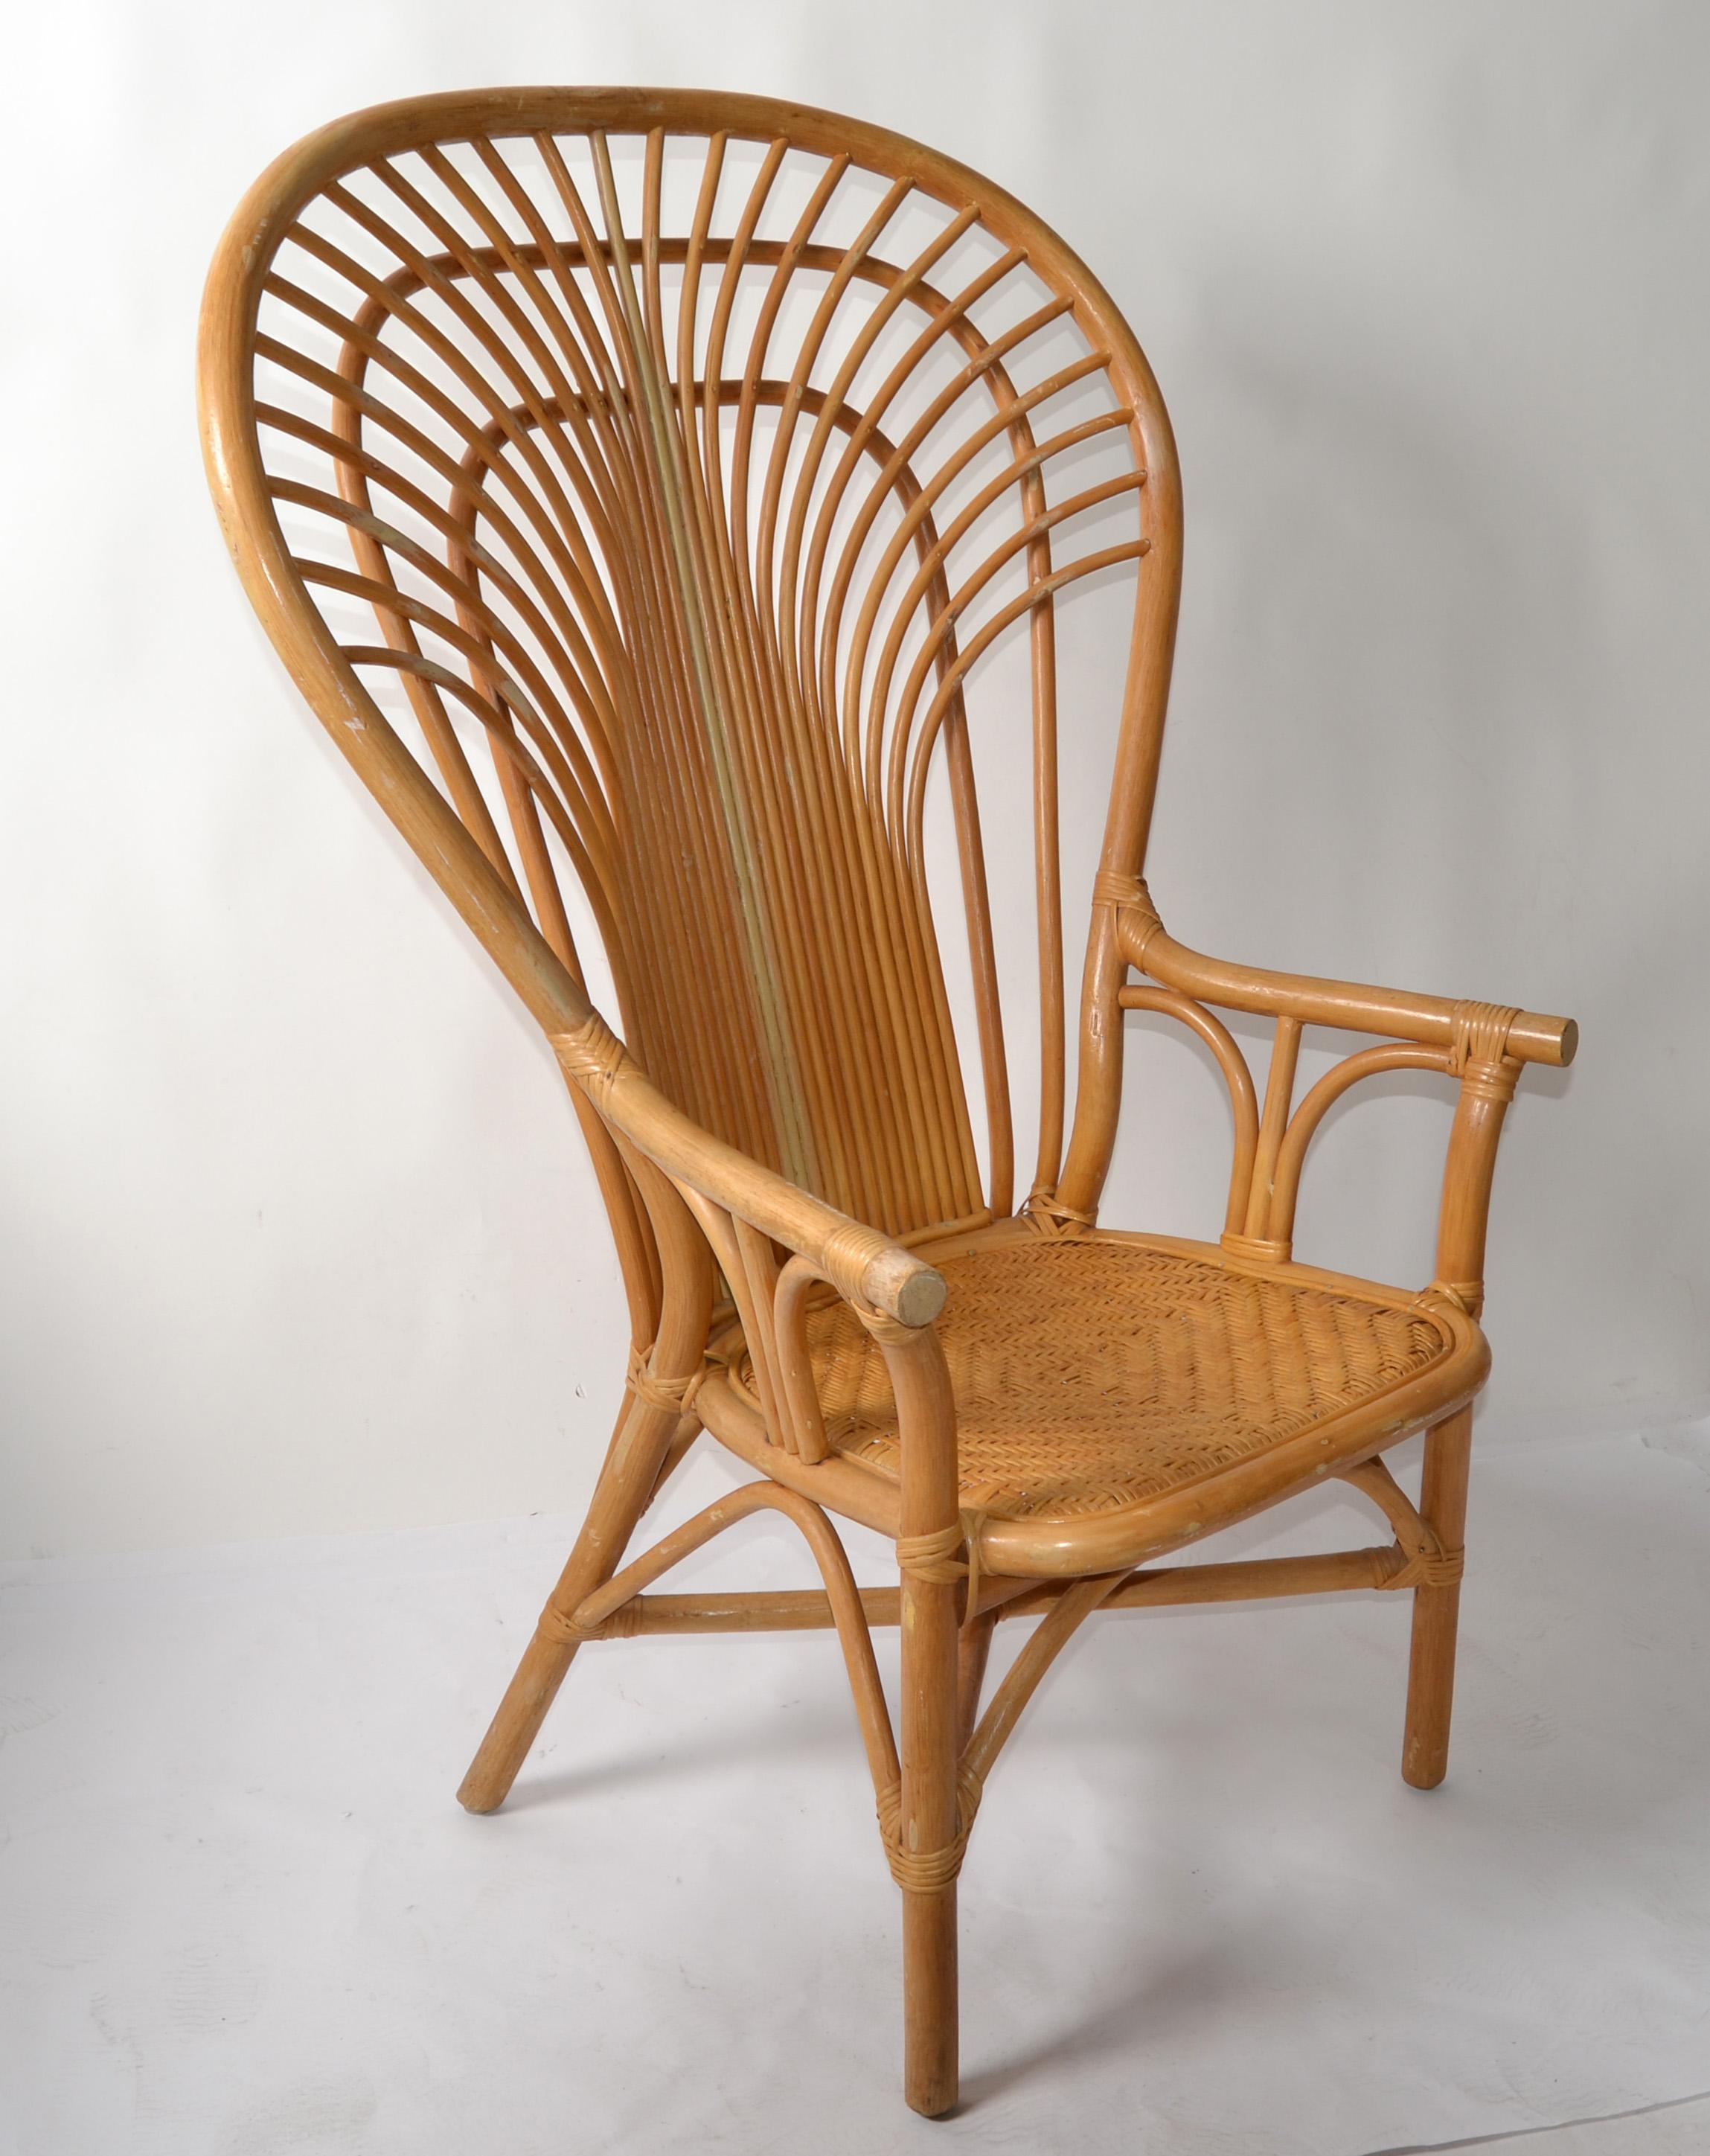 Atemberaubende Boho Chic handgewebten Vintage Beige Wingback Pfau Stuhl aus den 1970er Jahren.
Aus Bambusgeflecht, Rattan und gespaltenem Schilfrohr handgefertigter und handgeflochtener Sitz.
Goldfolien-Label an der Basis, hergestellt auf den